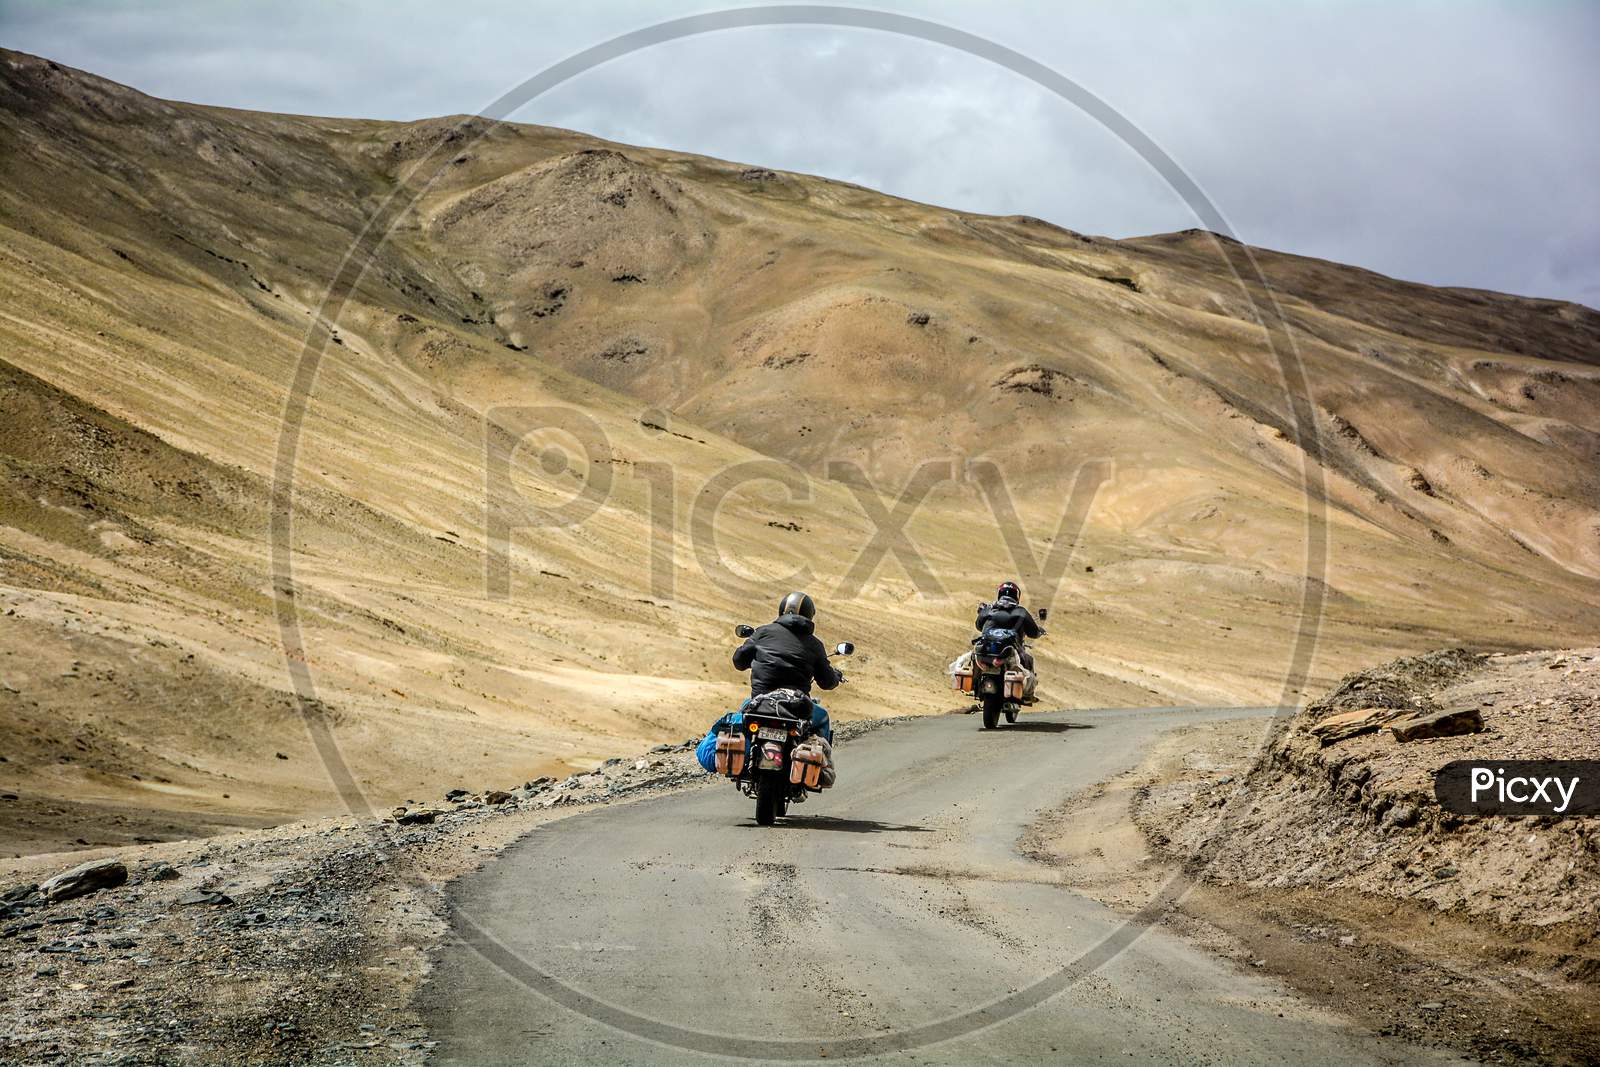 MOTORCYCLING AT LADAKH